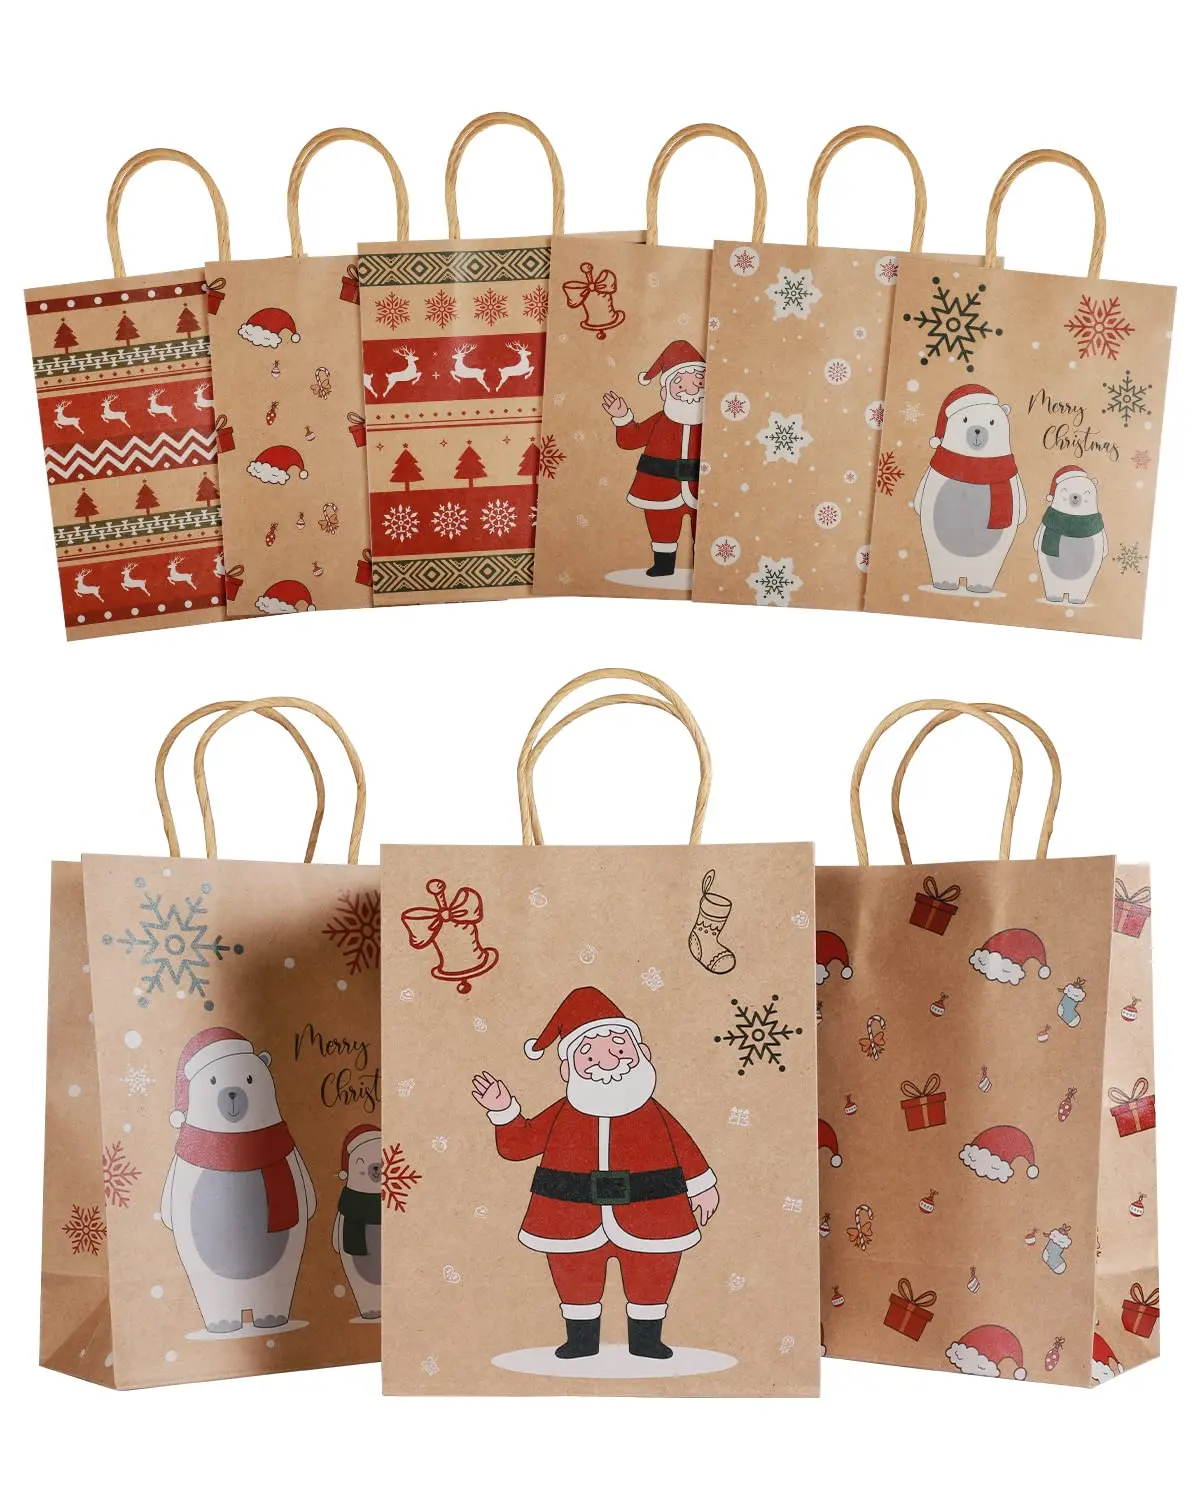 6 disegni borsa per albero di natale in carta Kraft decorazioni natalizie forniture per feste grande sacchetto di carta regalo di natale